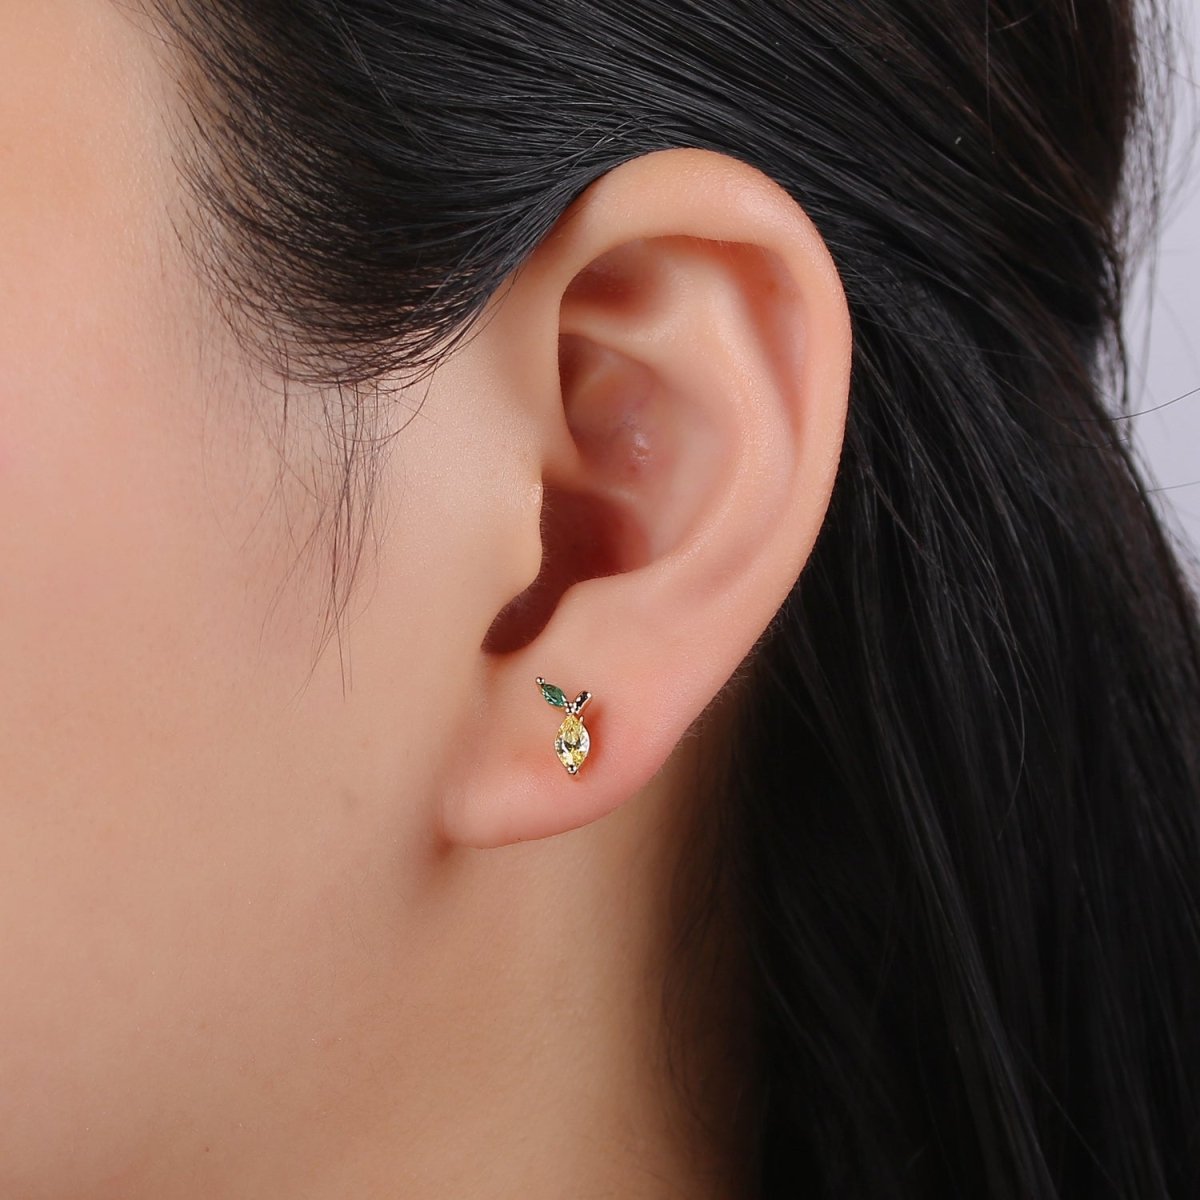 Gold Lemon Stud Earring, Crystal Lemon Studs, Lemon Fruit Earring, Minimalist Earring, Dainty Earrings for Girls, Gift P-018 - DLUXCA